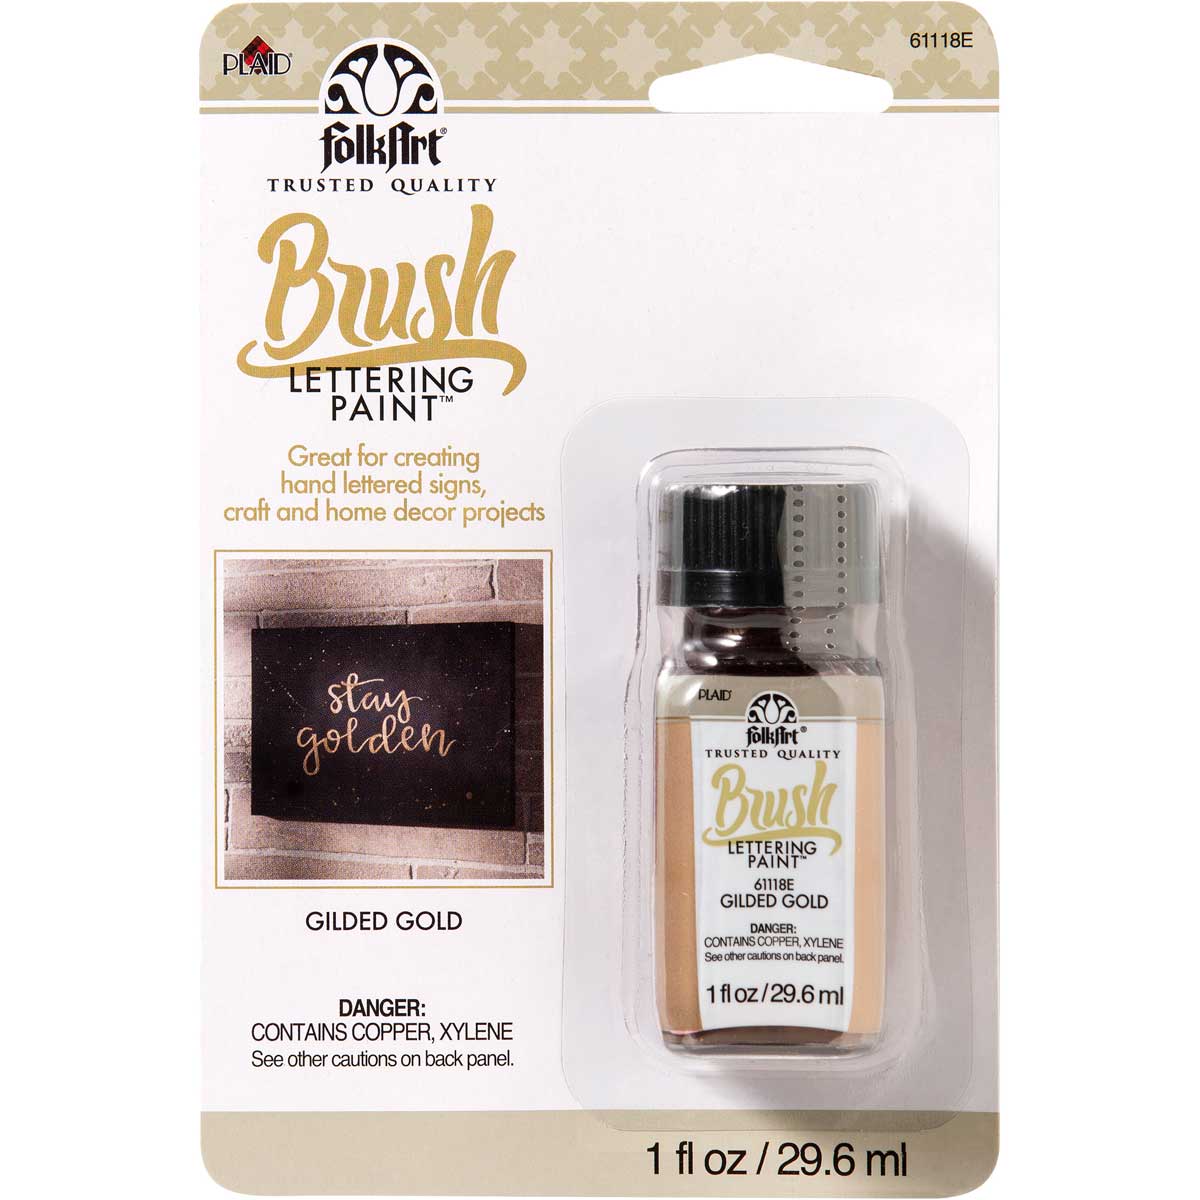 FolkArt ® Brush Lettering Paint - Gilded Gold, 1 oz. - 61118E